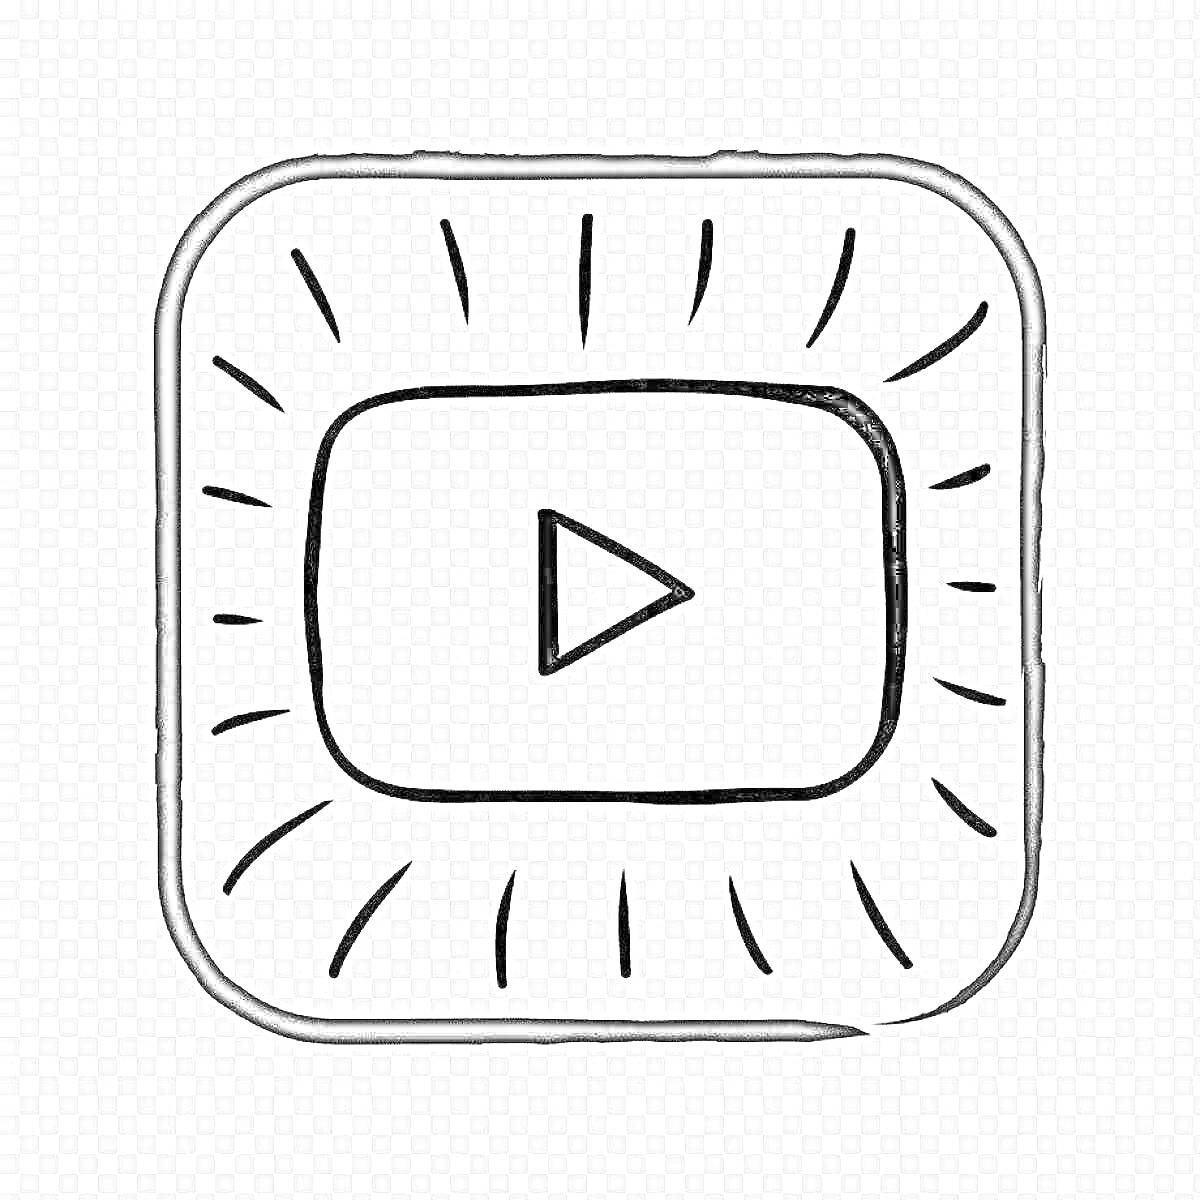 Логотип YouTube с треугольной кнопкой воспроизведения в центре квадратной рамки с тонкими линиями вокруг